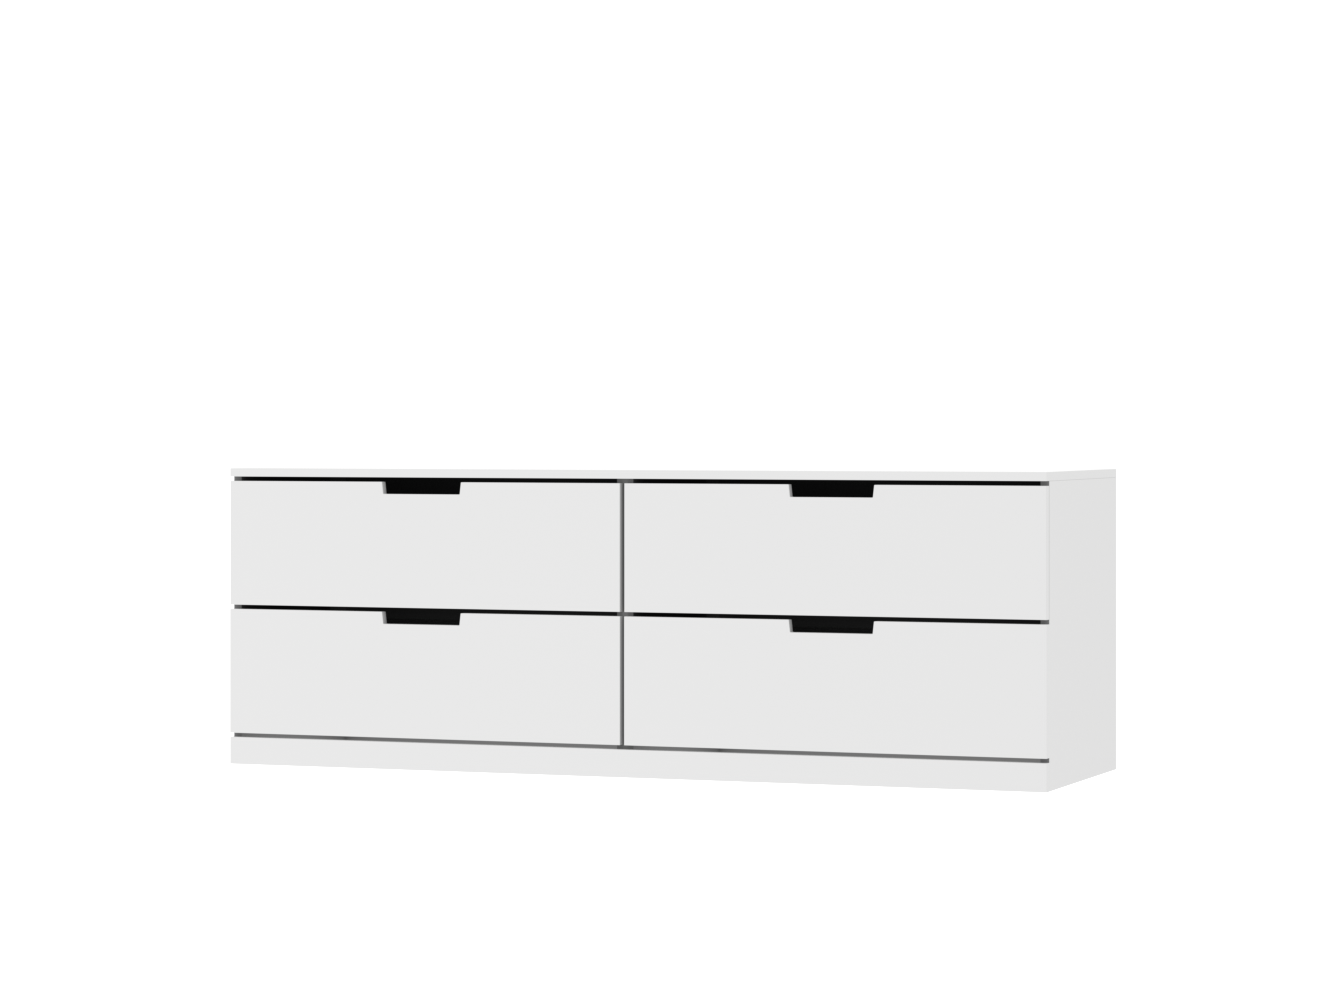  Комод Нордли 22 white ИКЕА (IKEA) изображение товара